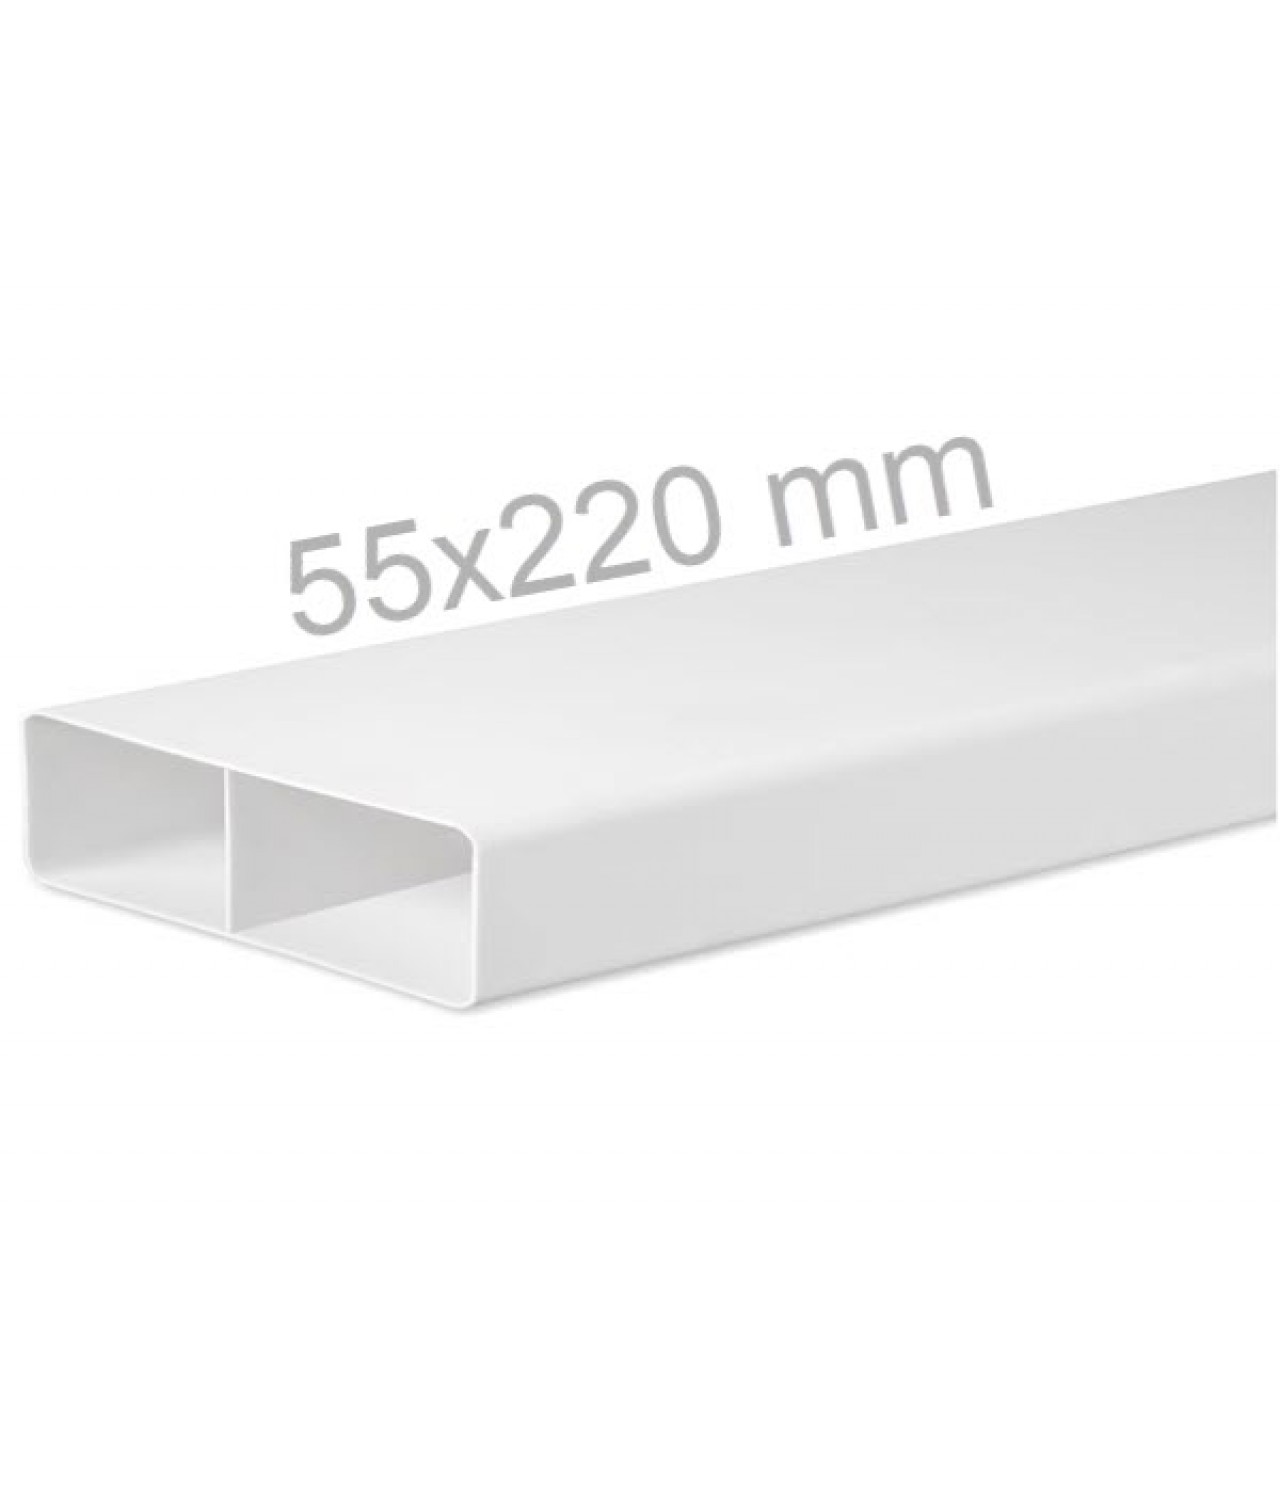 Plastic flat ducts EKO-P 55x220 mm